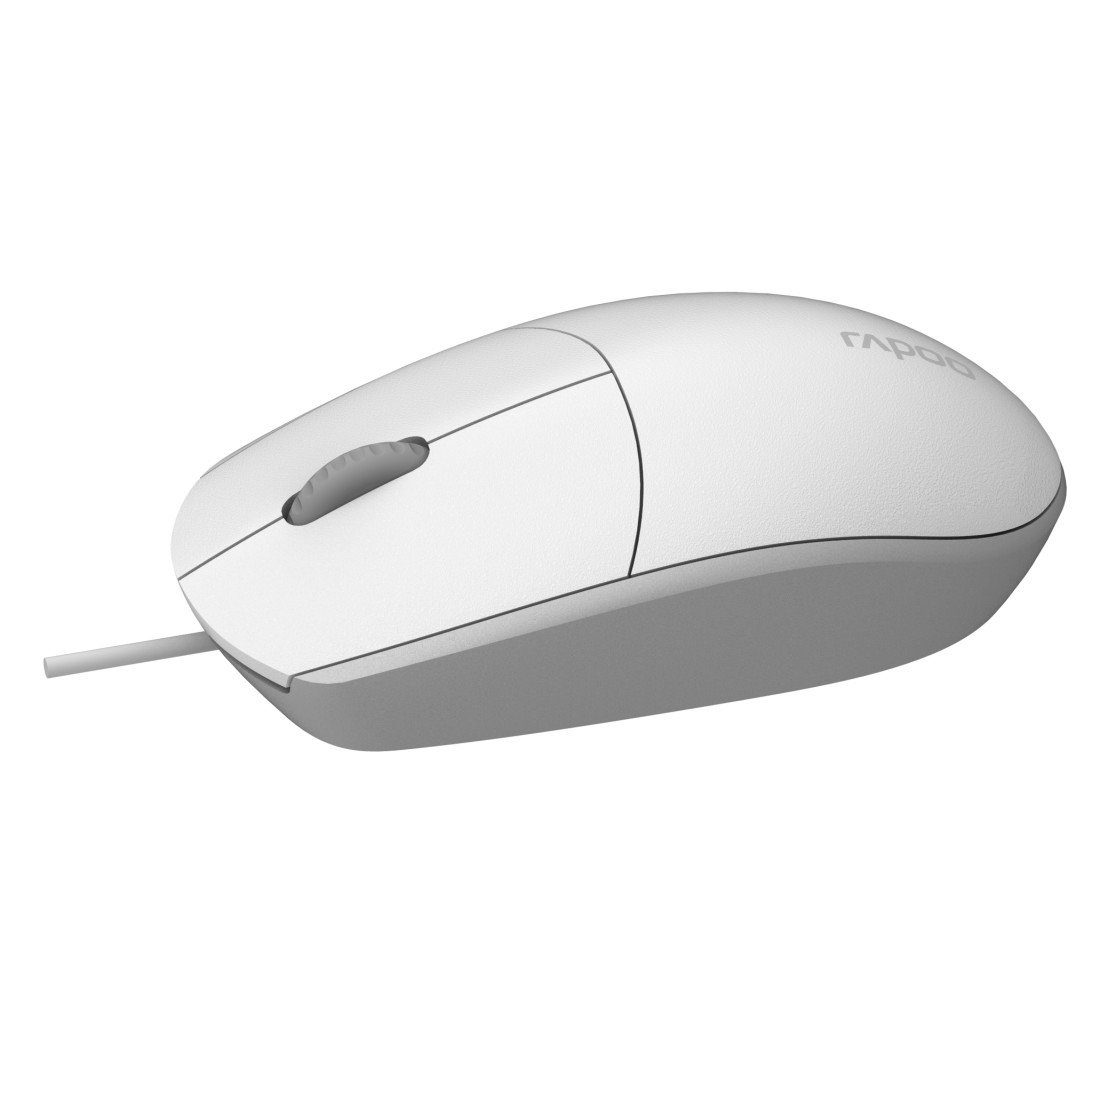 Rapoo N100 kabelgebundene Maus, DPI 1600 (kabelgebunden) weiß Maus